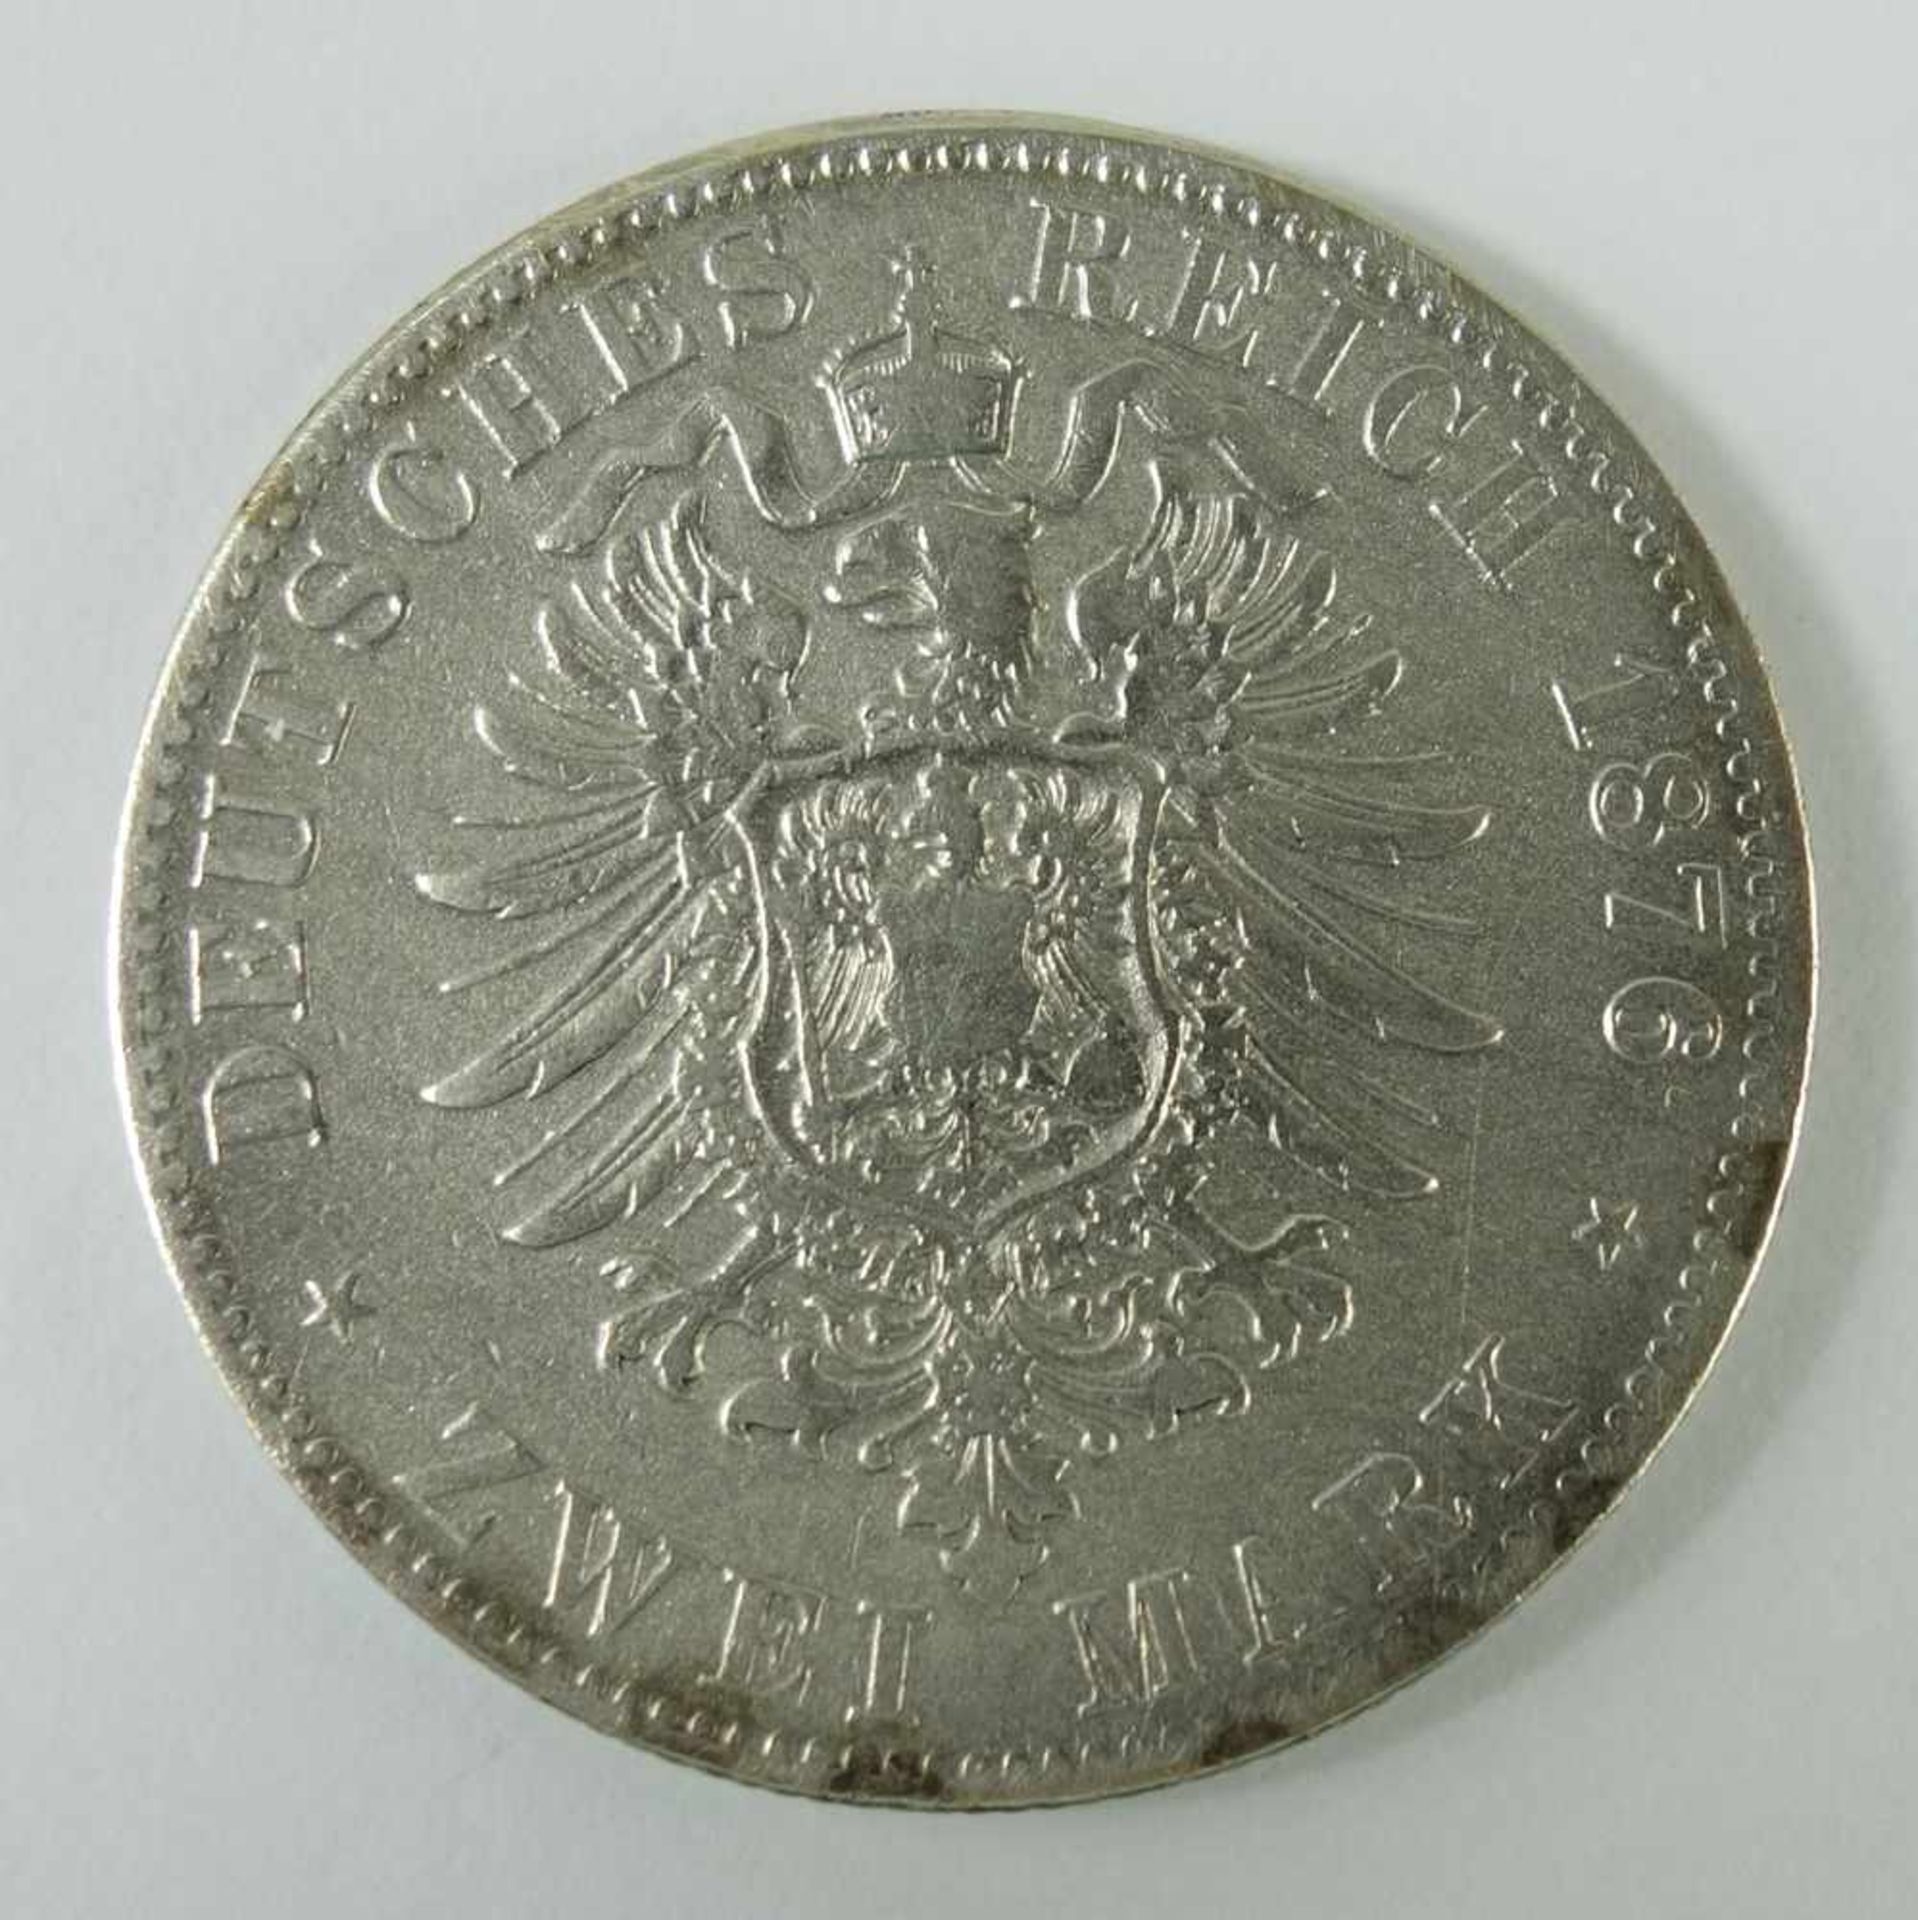 2 Mark 1876, F, "Karl, König von Württemberg", Kaiserreich, 900er Silber, Gew. 10,93g, ss-vz- - - - Image 2 of 2